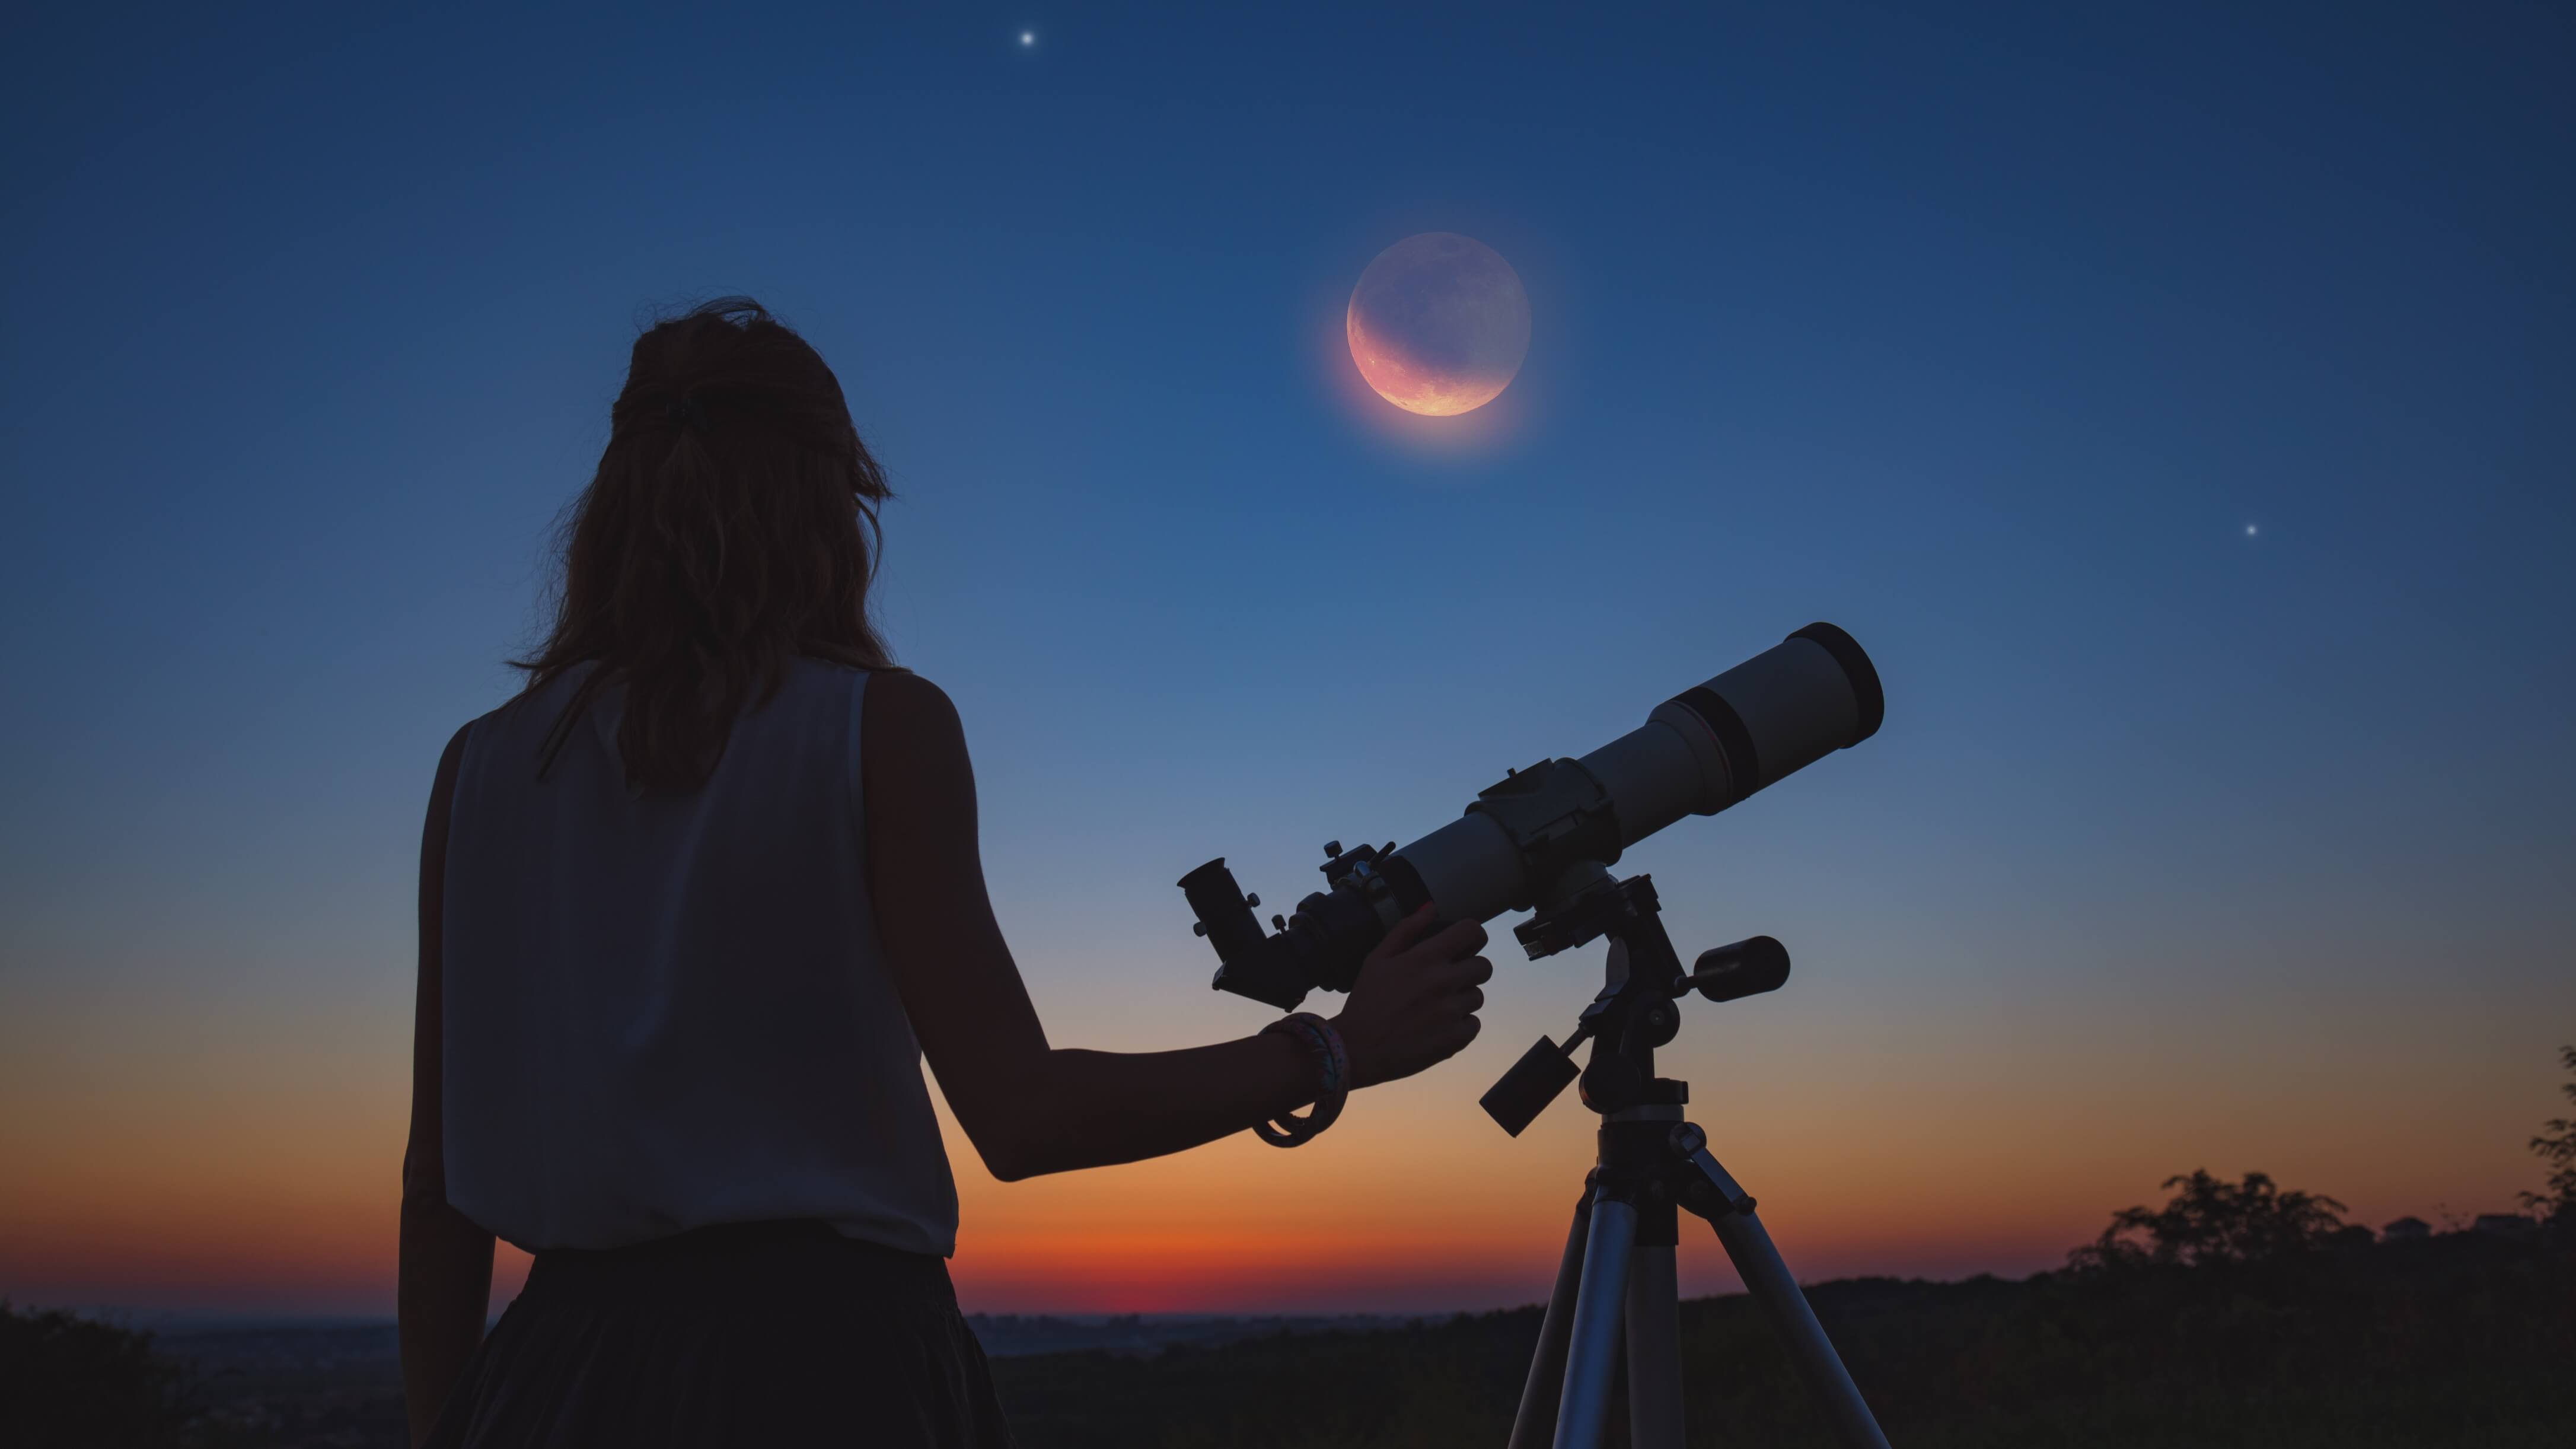 Sonnen- und Mondfinsternis fotografieren 